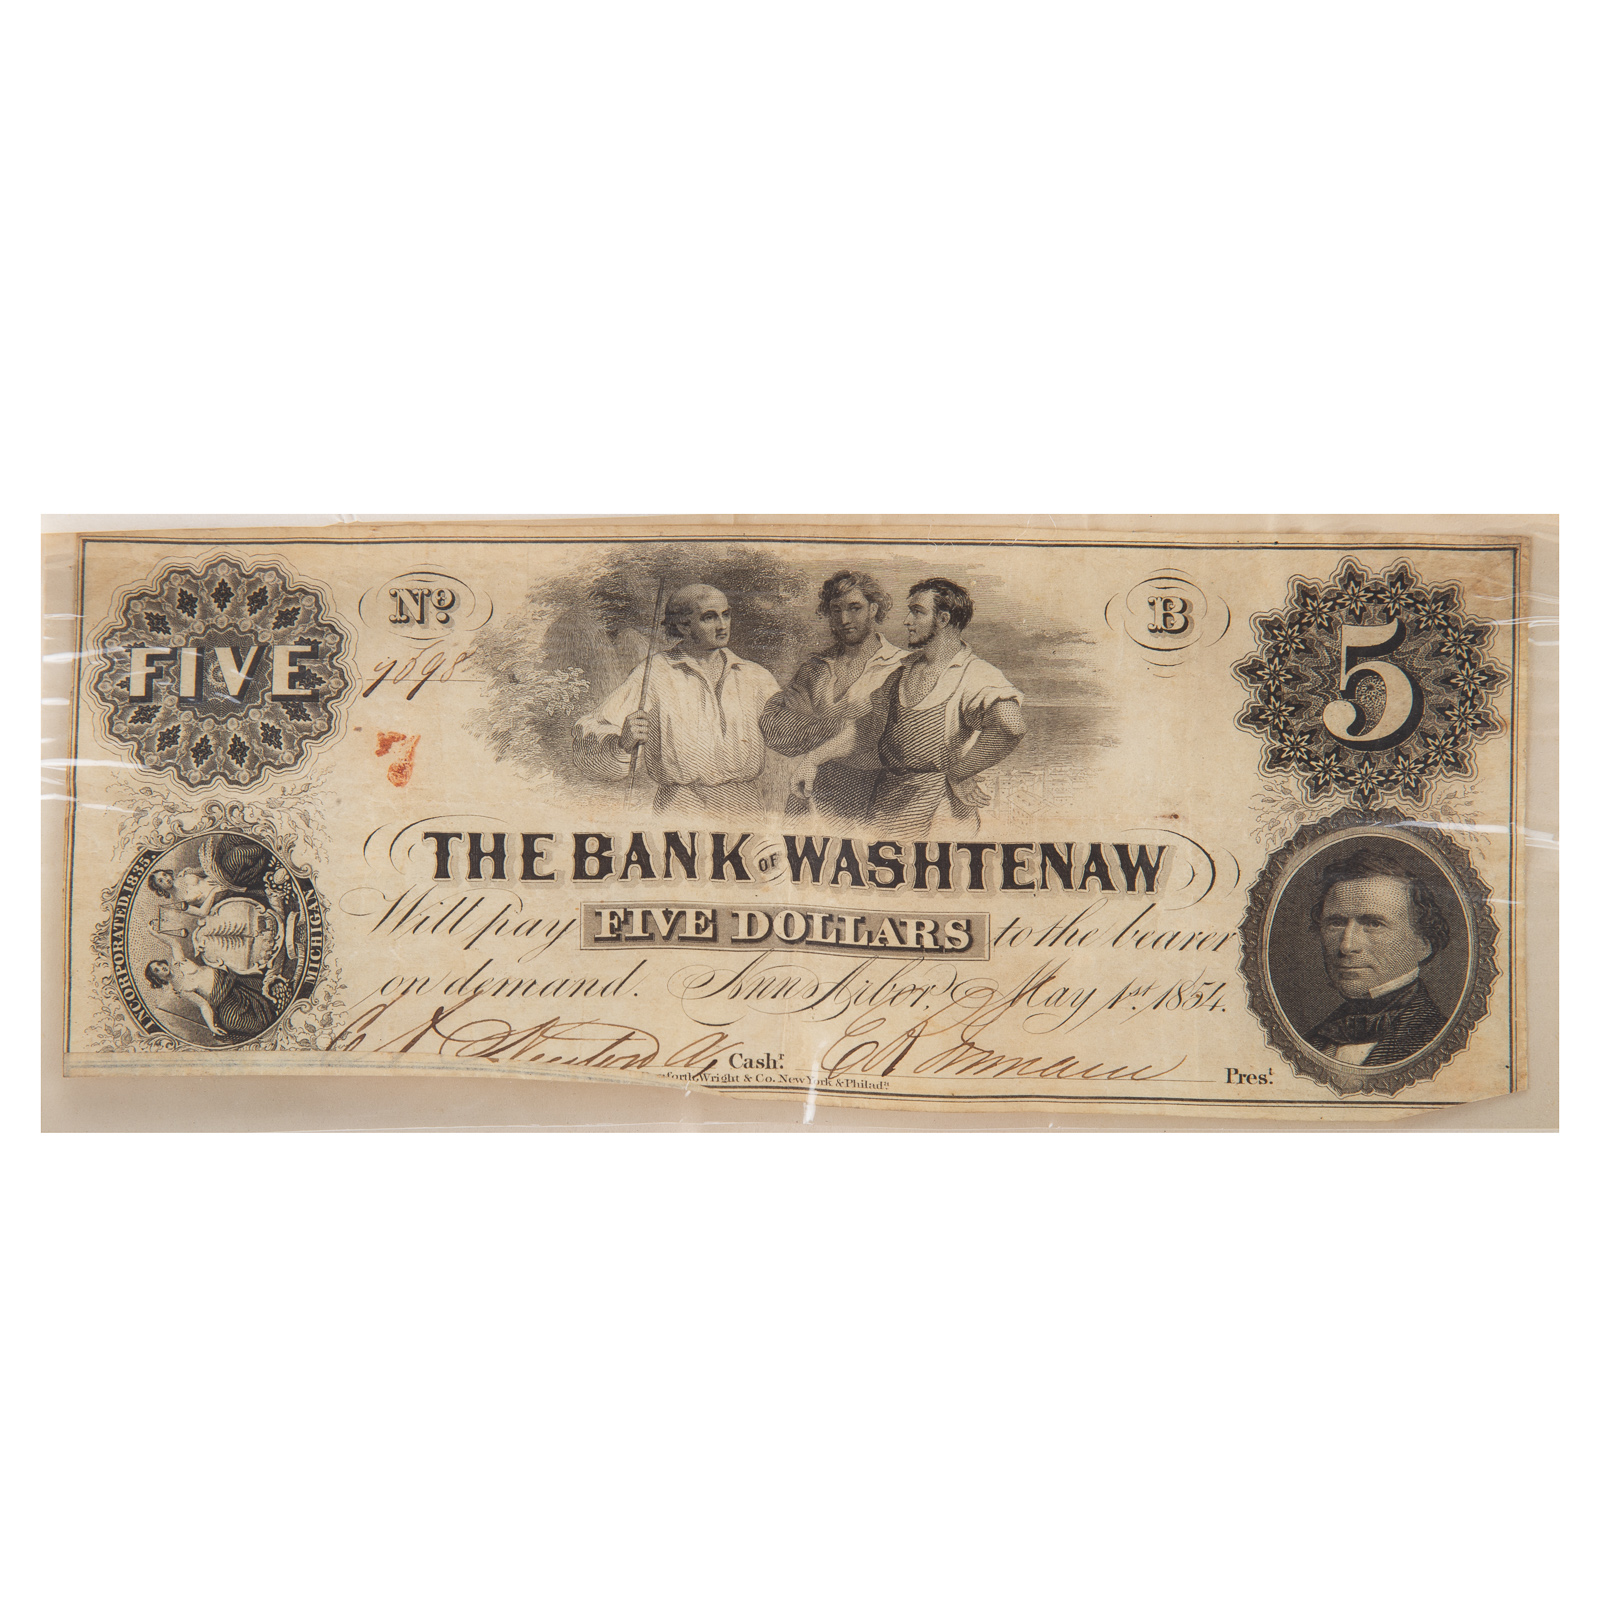 14 - $5 BANK OF WASHTENAW OBSOLETE